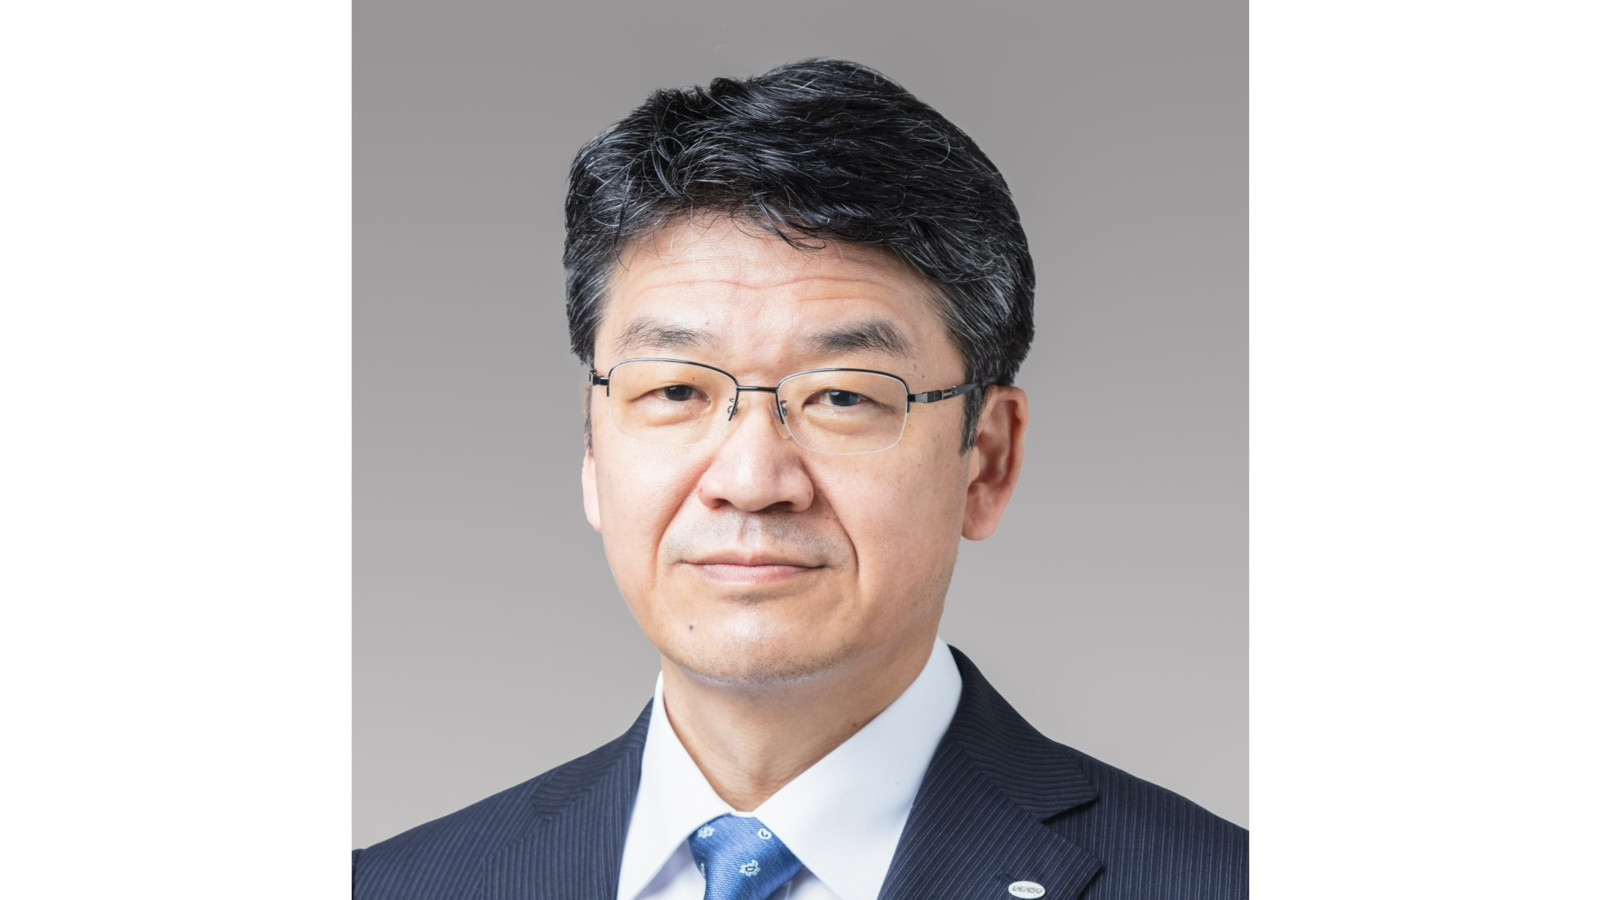 Shinnosuke Hayashi ist Präsident und COO des Automobilzulieferers Denso